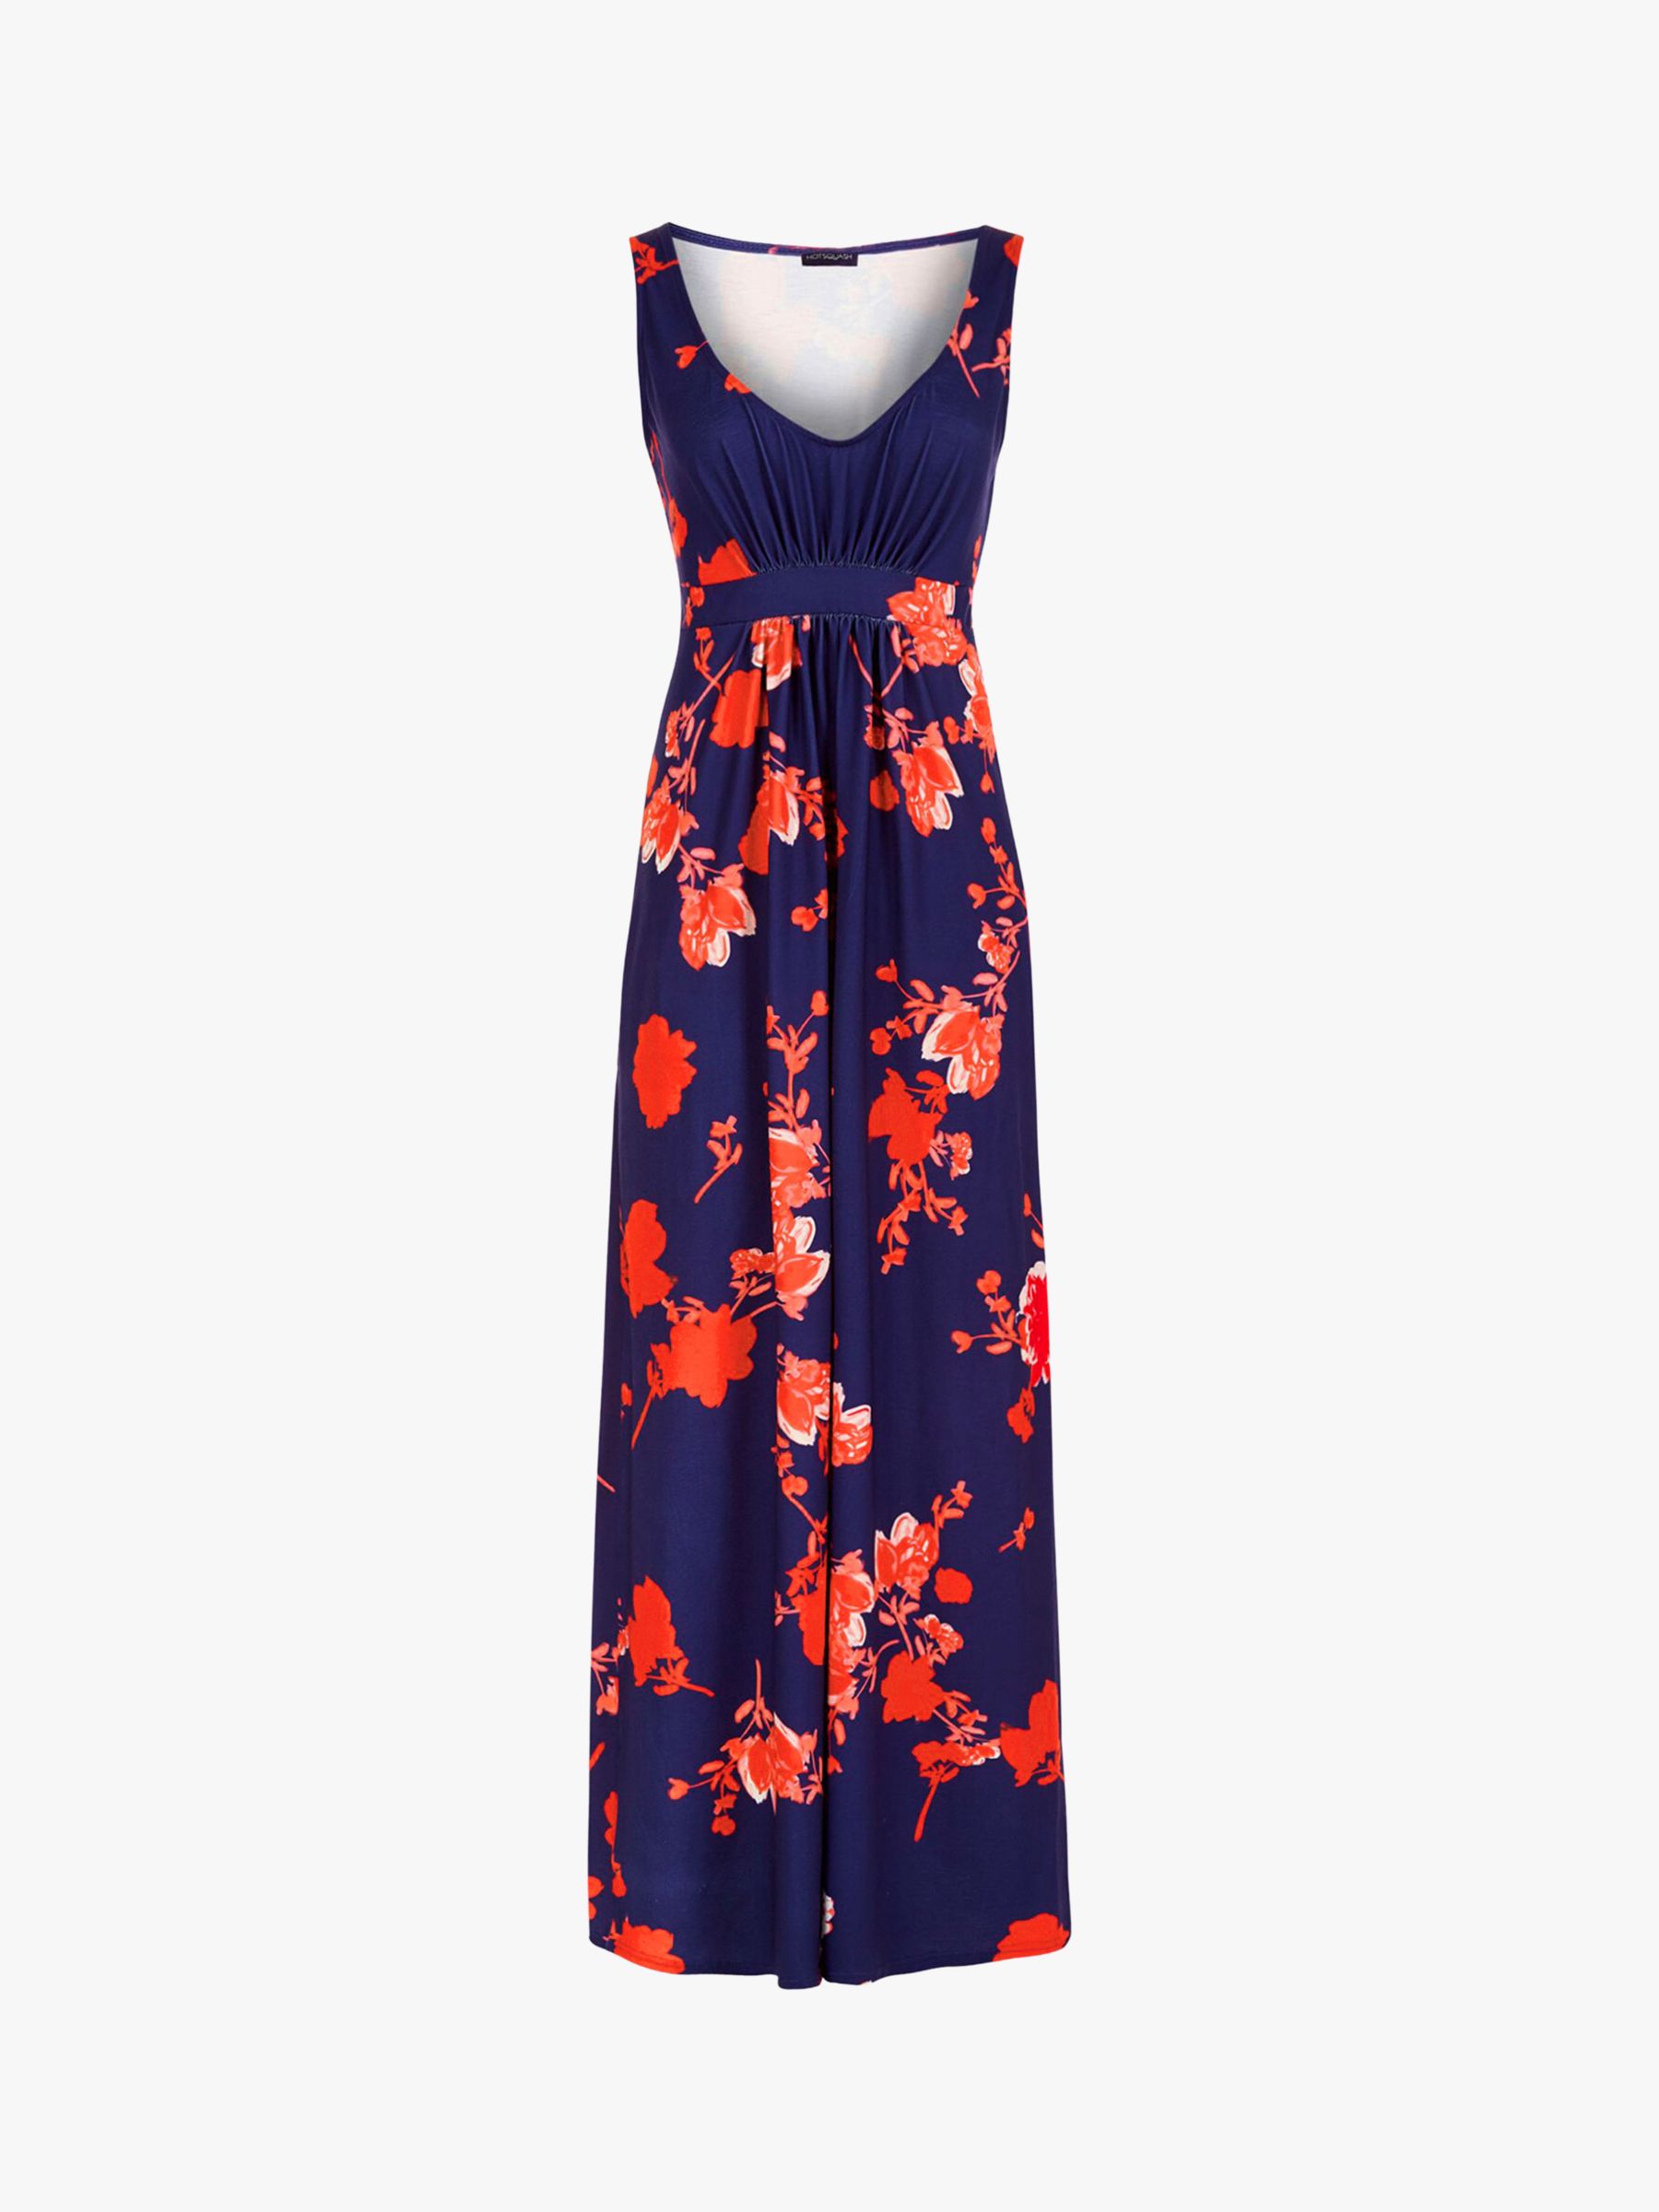 HotSquash Floral Print Empire Waist Maxi Dress, 8